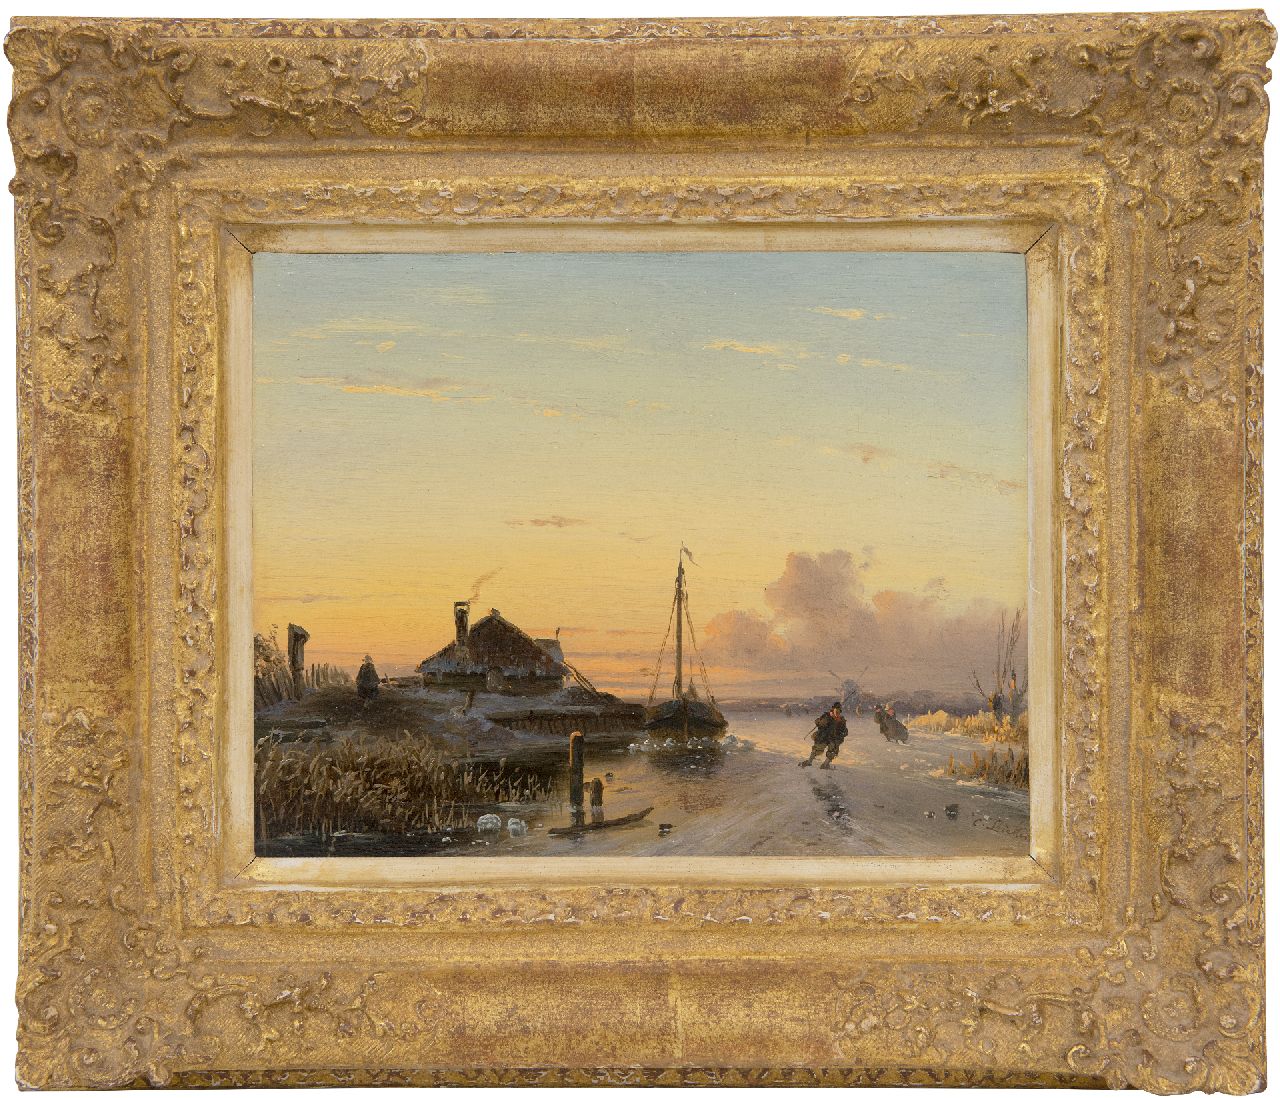 Leickert C.H.J.  | 'Charles' Henri Joseph Leickert | Schilderijen te koop aangeboden | Schaatsers op het ijs bij ondergaande zon., olieverf op paneel 17,0 x 21,0 cm, gesigneerd rechtsonder en te dateren ca. 1850